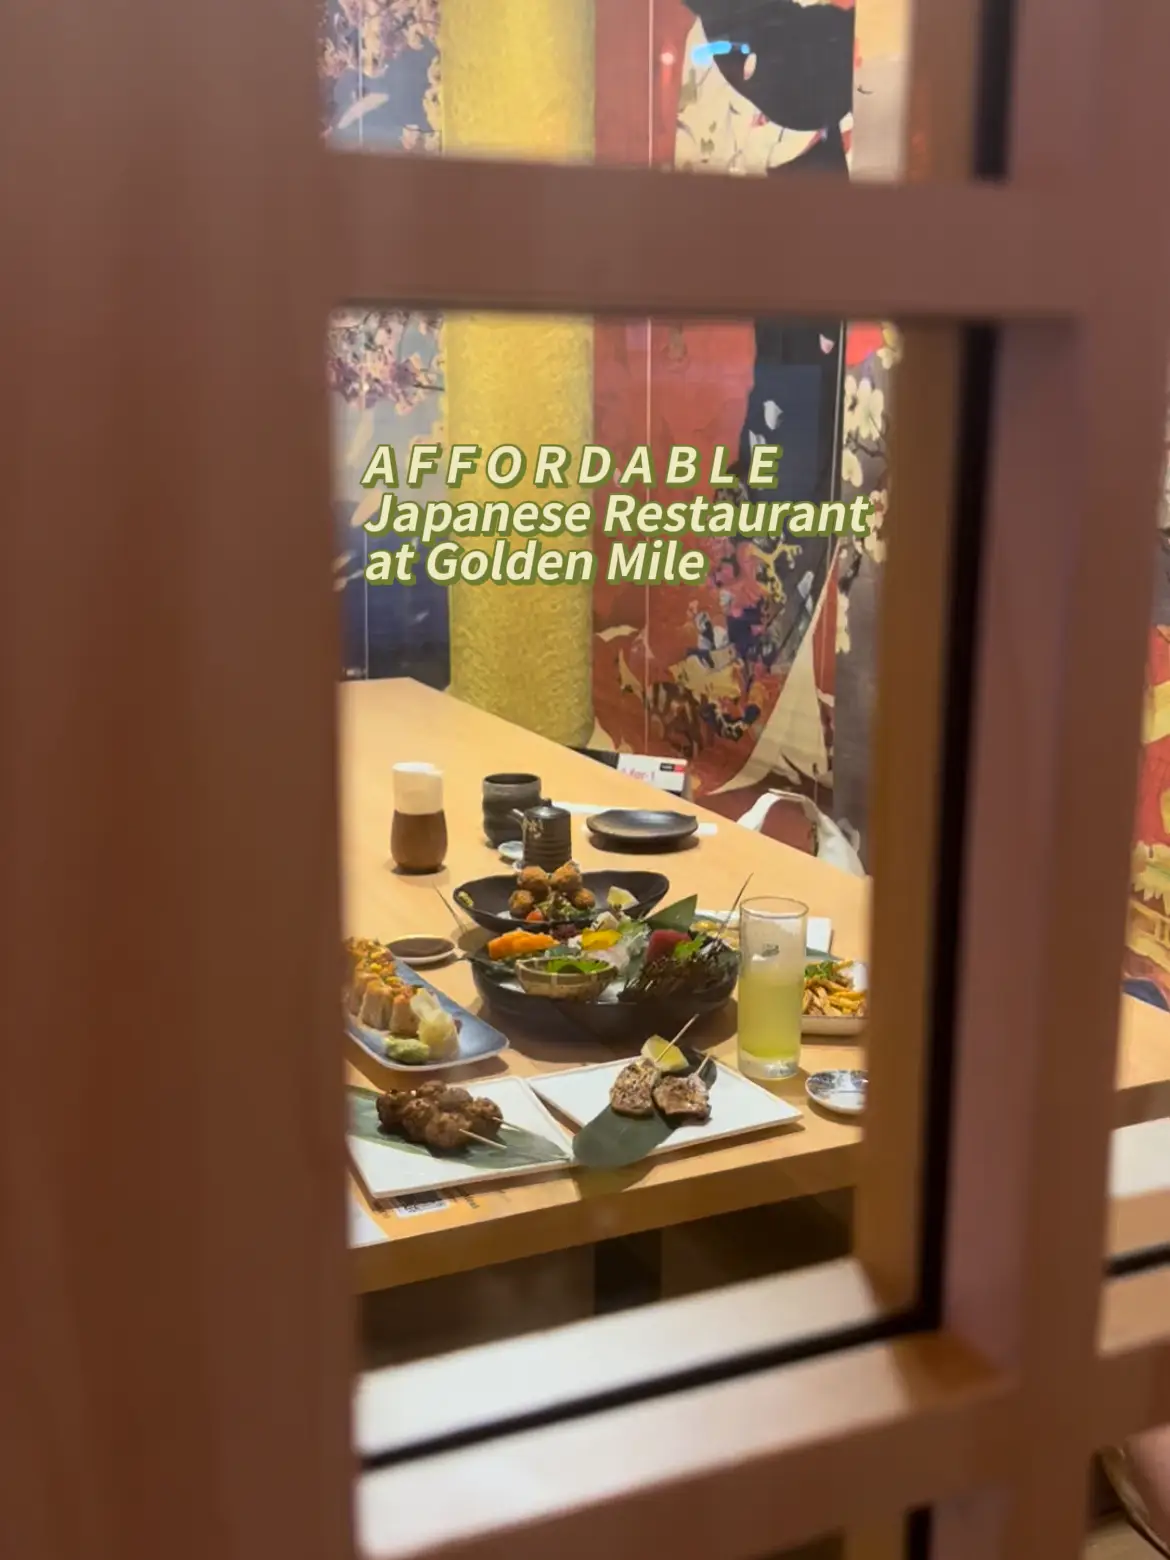 Affordable Japanese Restaurant at Golden Mile 🏮 's images(0)